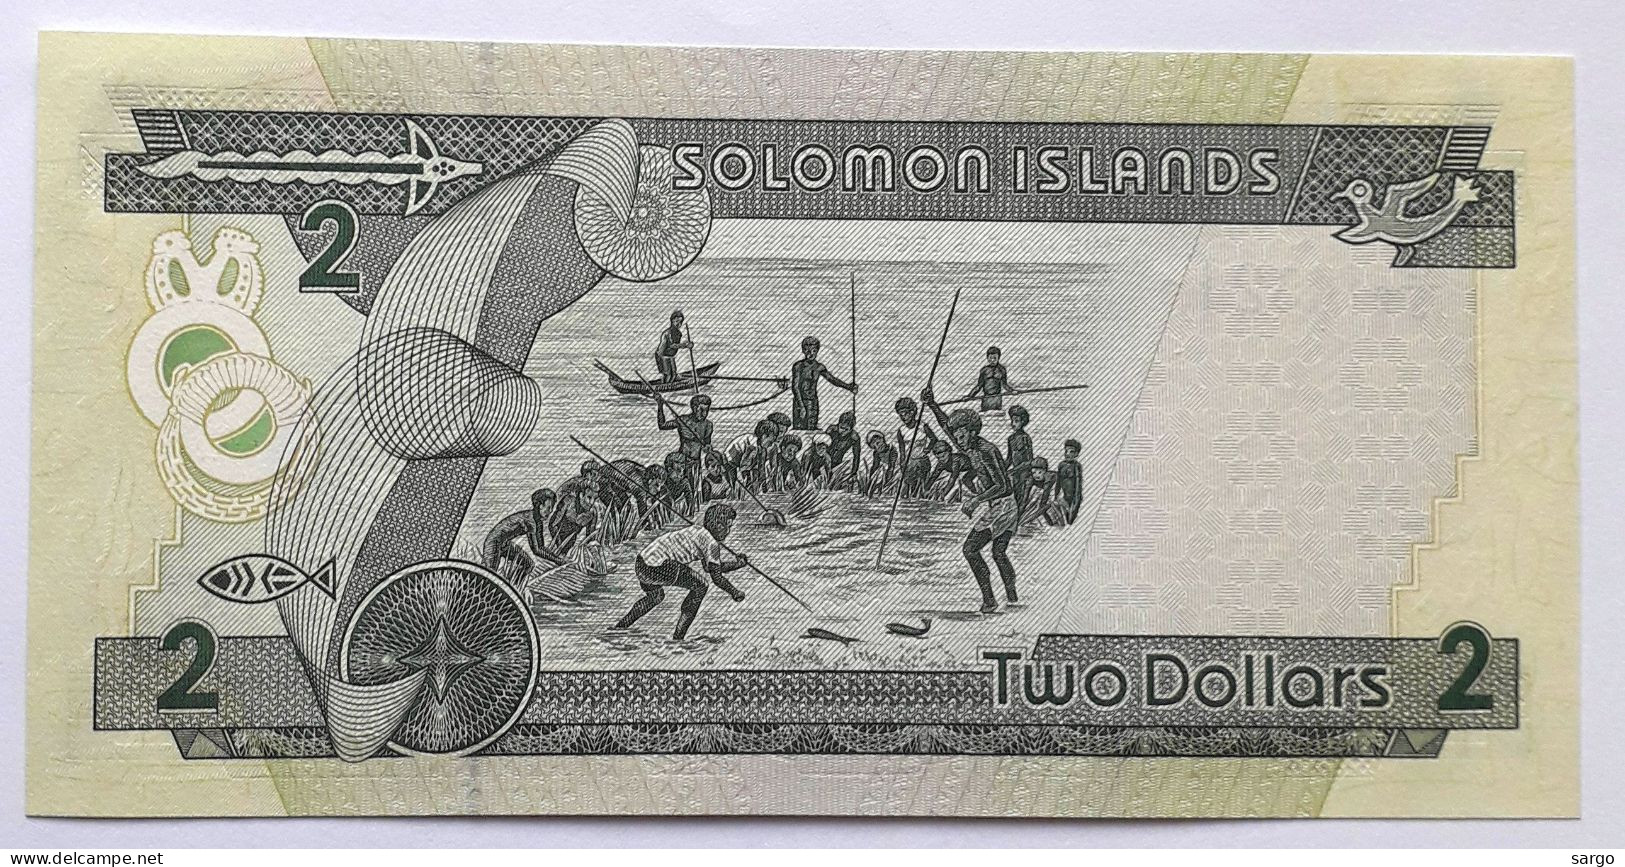 SOLOMON  - 2 DOLLARS - P 18  (1997) - UNC -  BANKNOTES - PAPER MONEY - Sao Tomé Et Principe